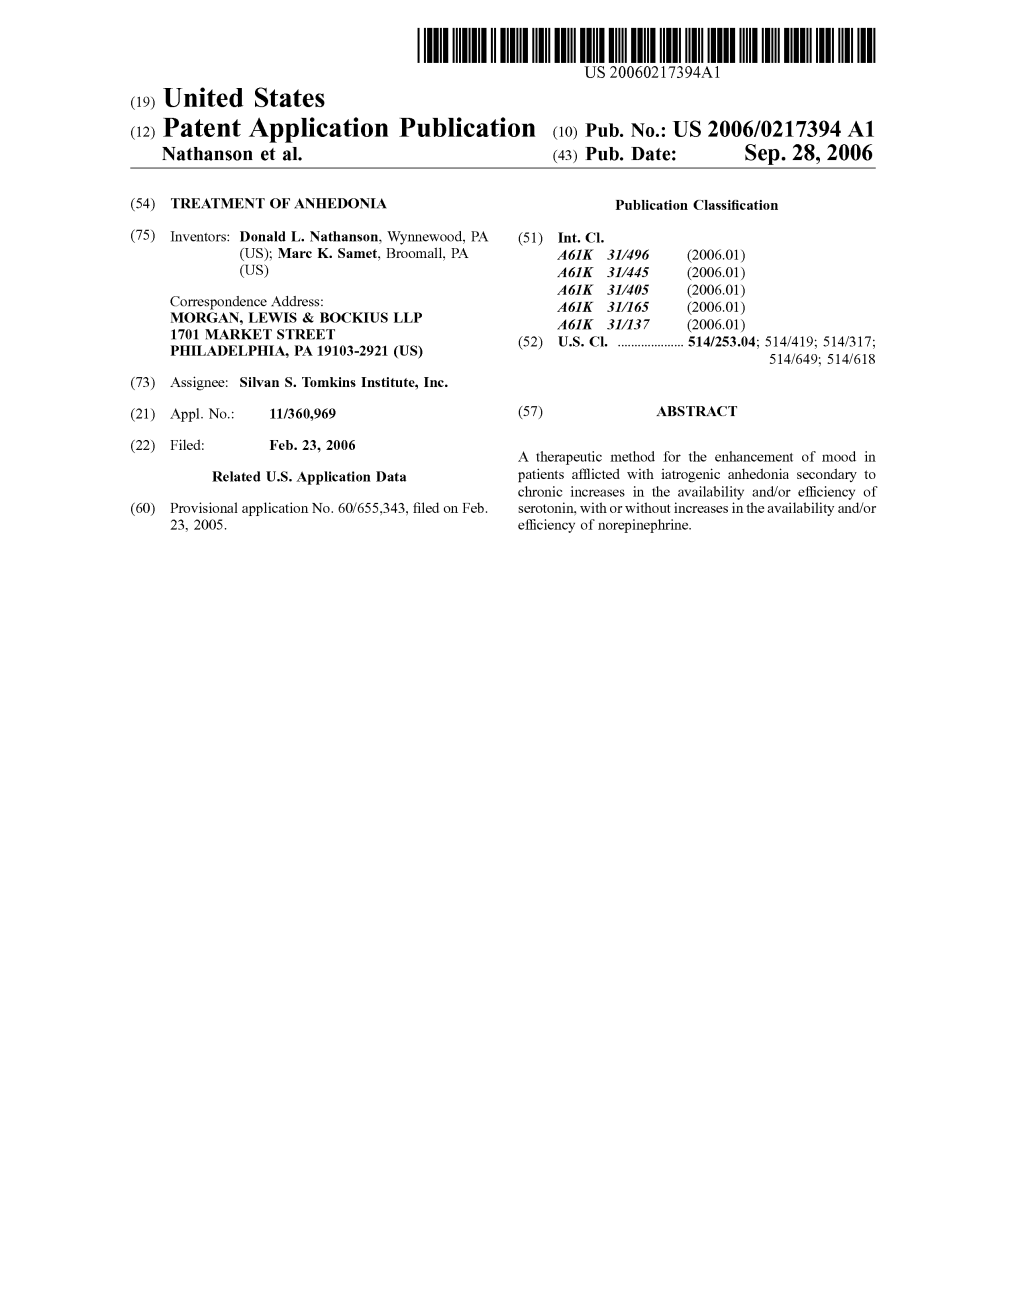 (12) Patent Application Publication (10) Pub. No.: US 2006/0217394A1 Nathanson Et Al